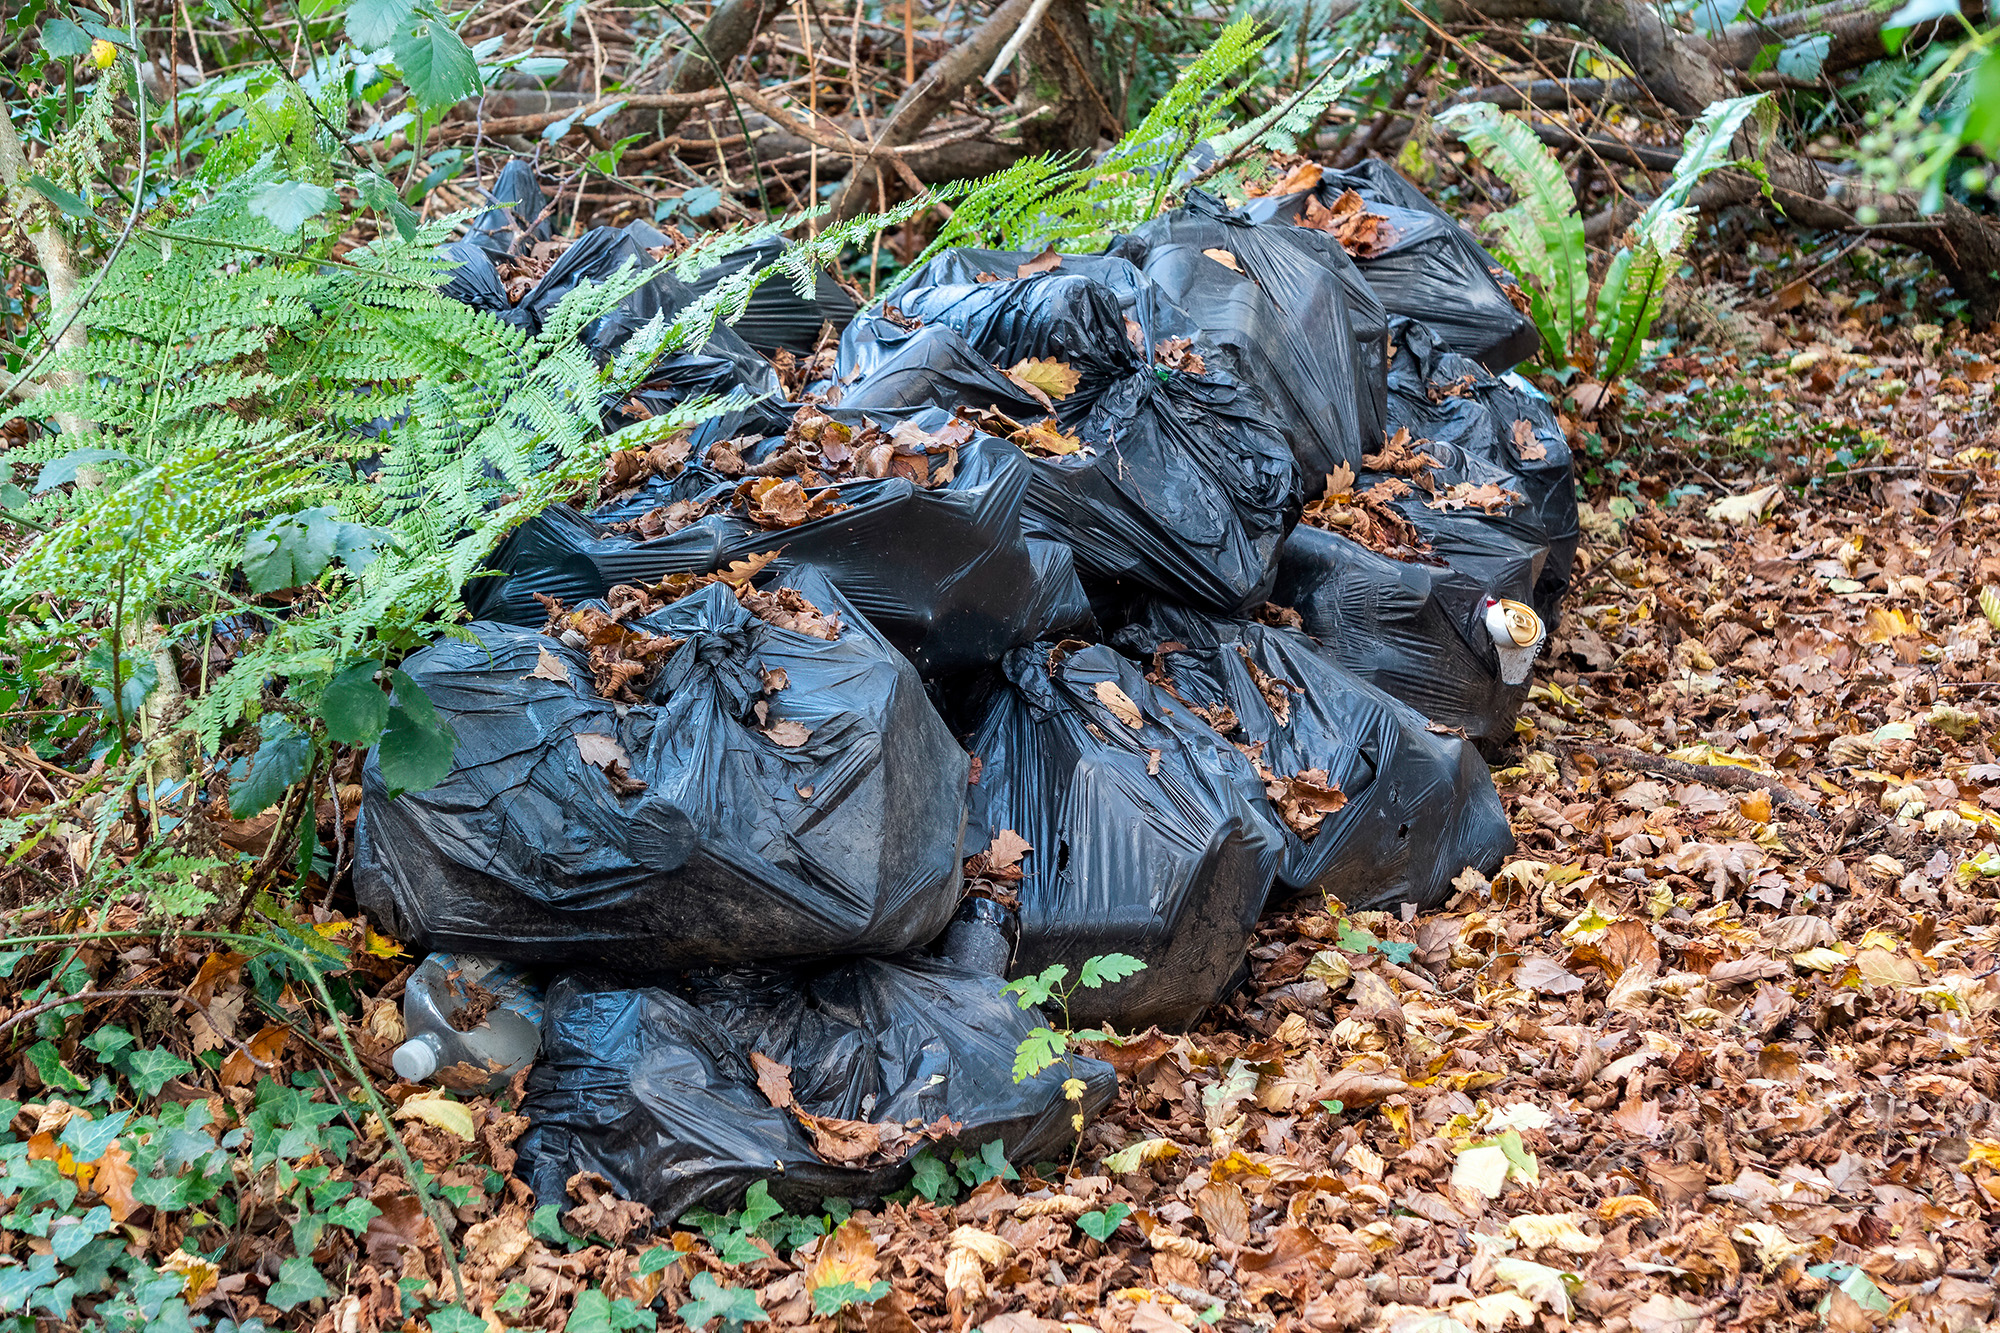 Müll, der illegal entsorgt wurde ( © Bildagentur PantherMedia/Anthony Baggett)